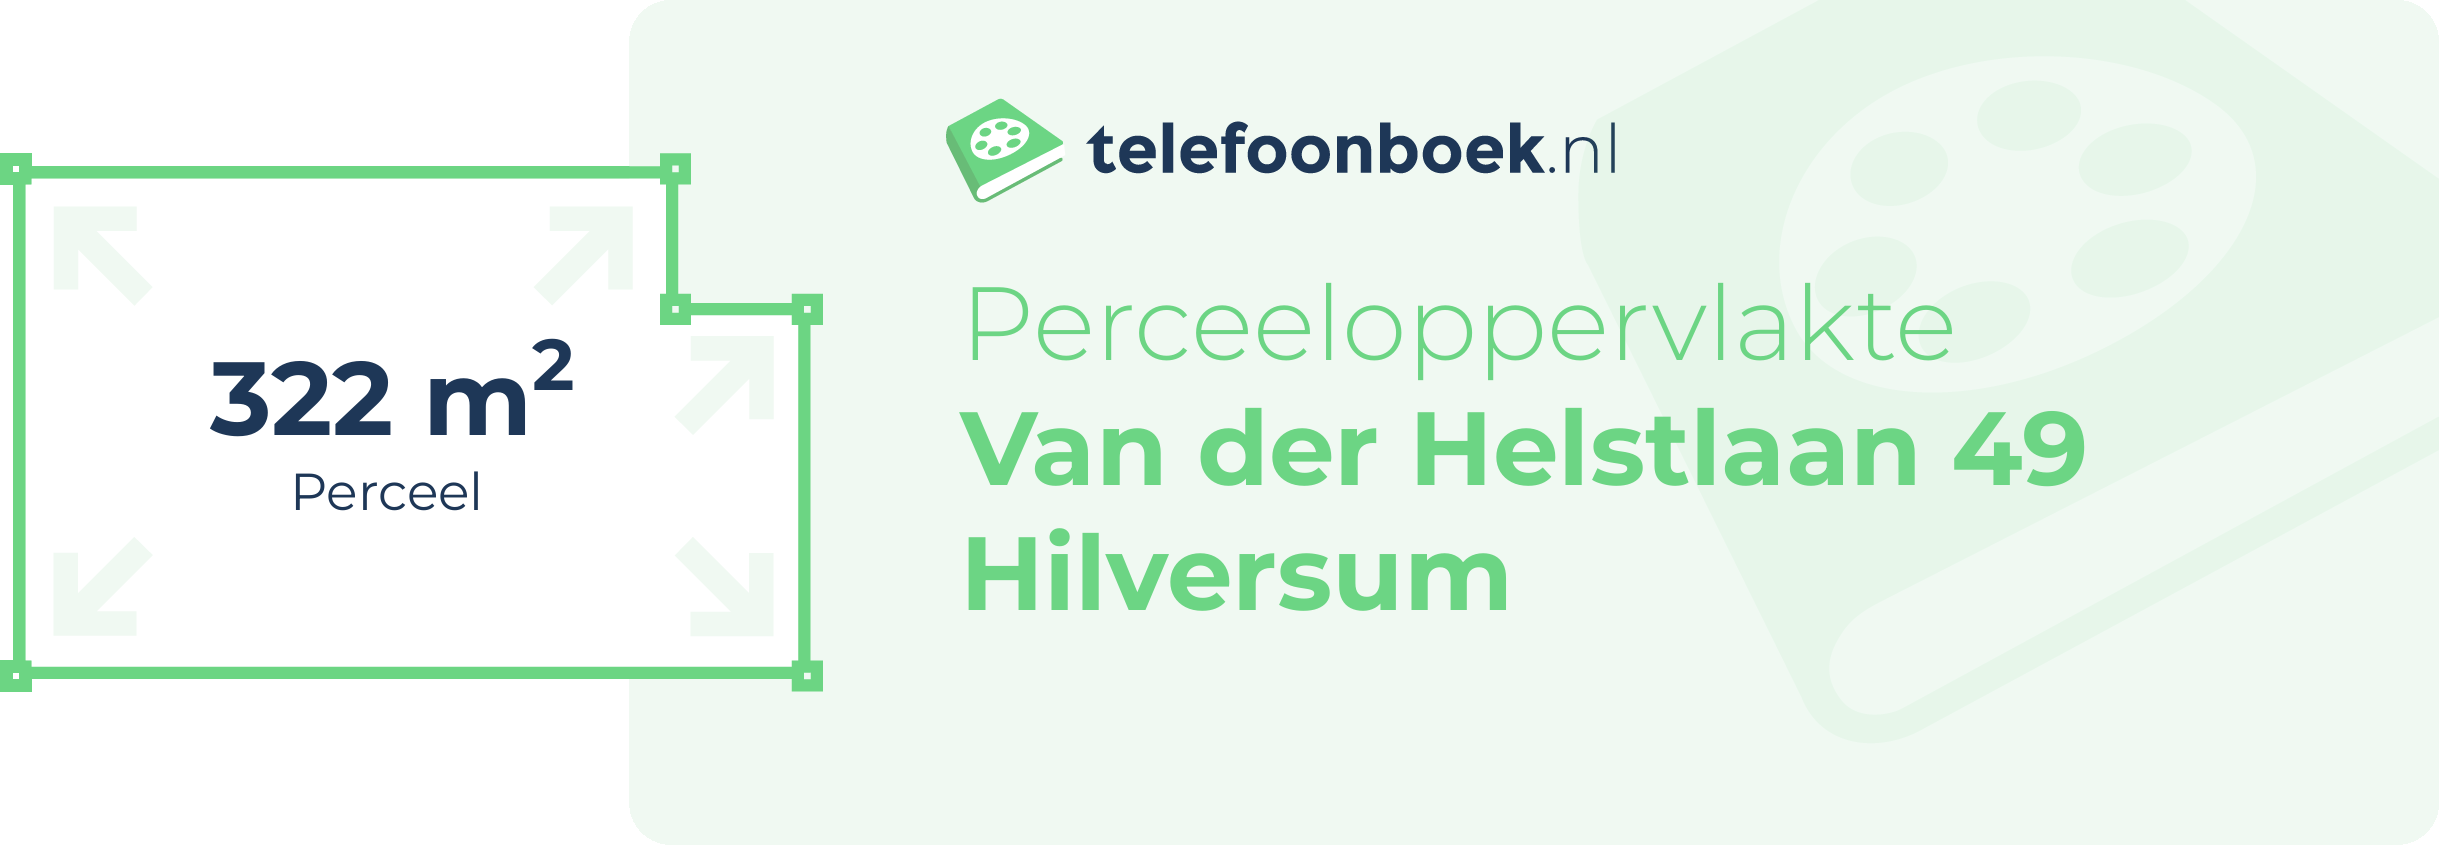 Perceeloppervlakte Van Der Helstlaan 49 Hilversum